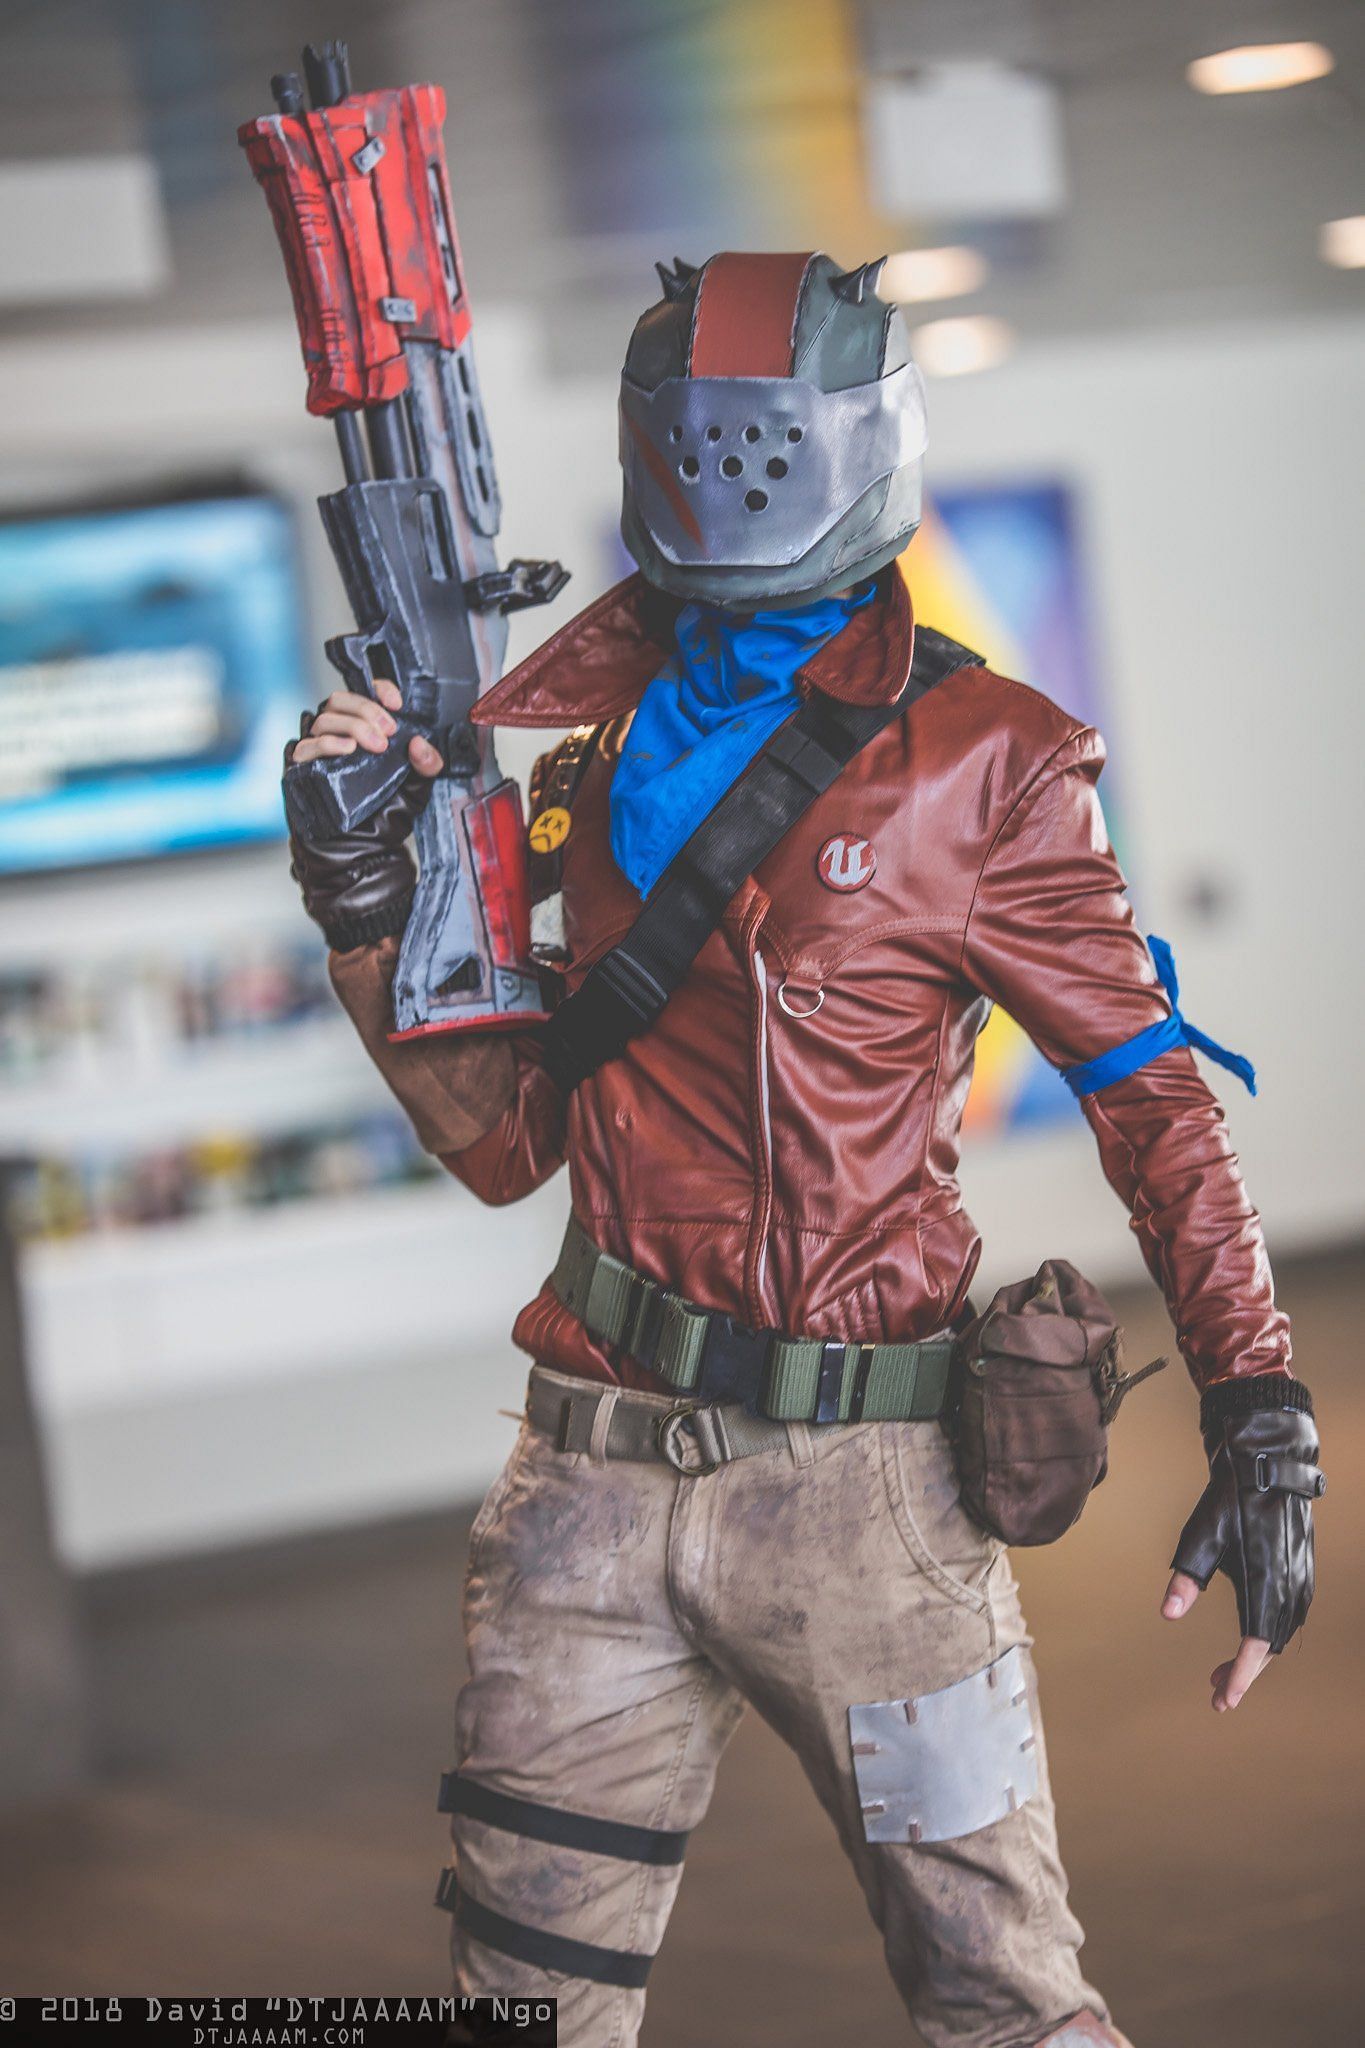 Rust Lord cosplay (Image via DTJAAAAM)